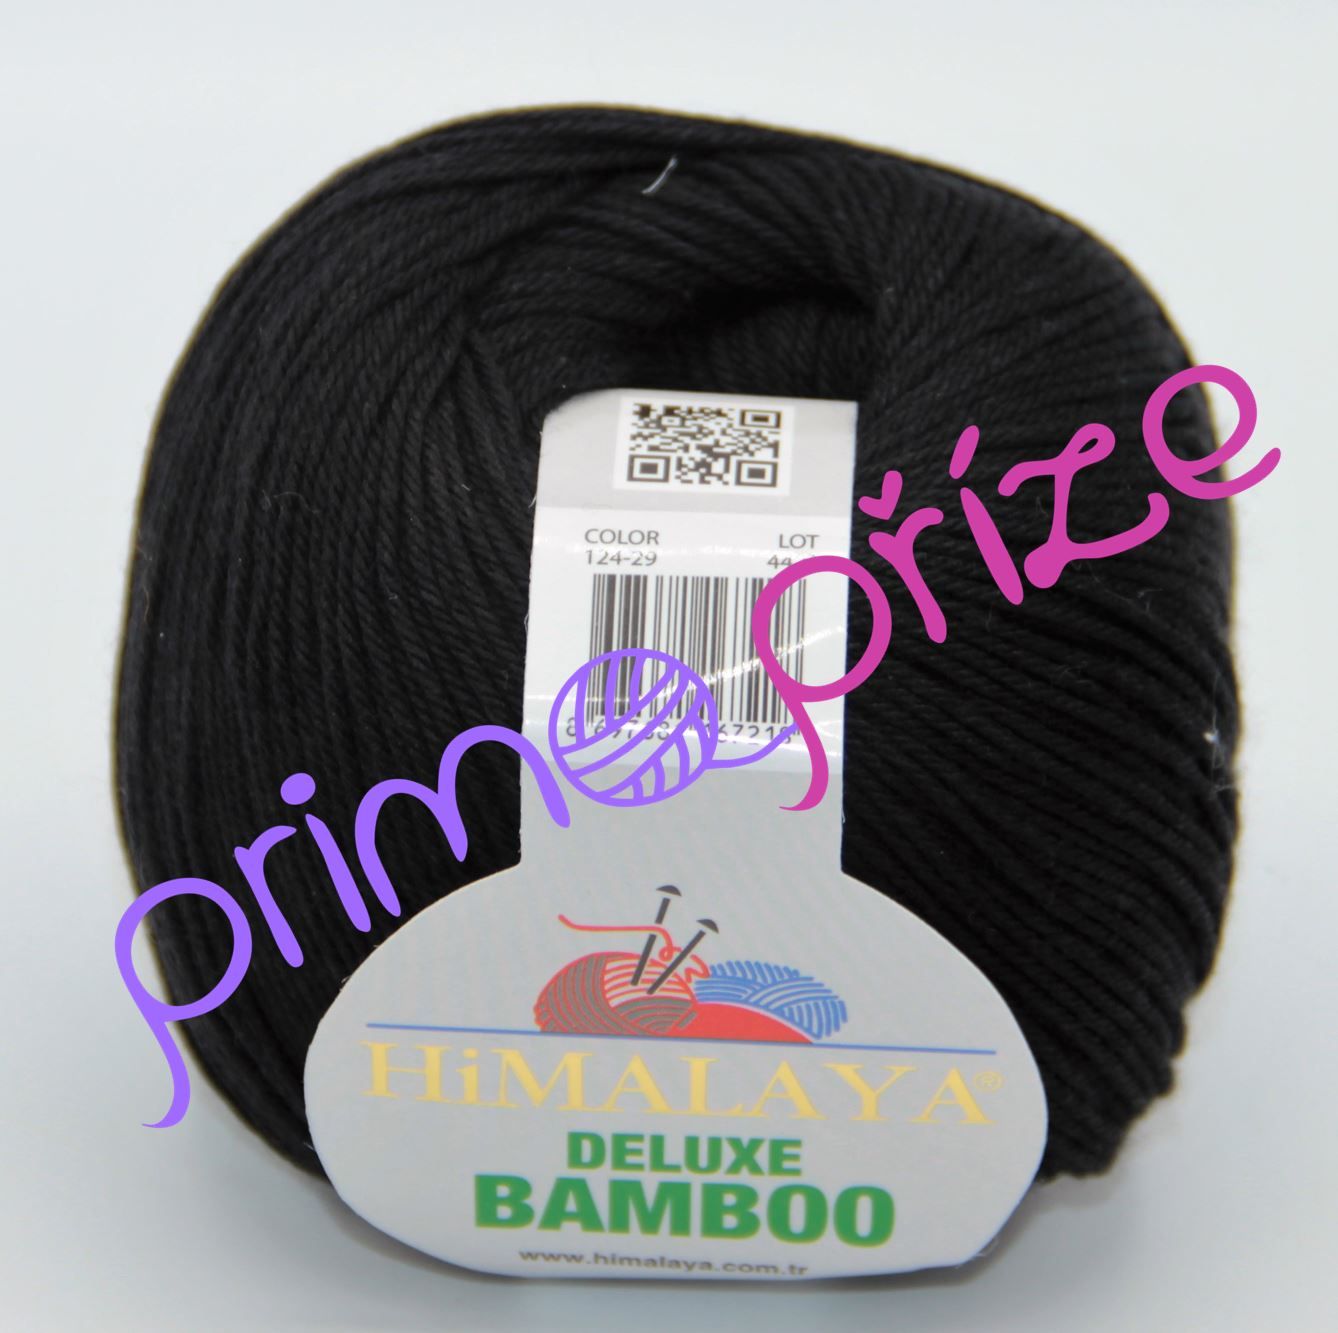 HIMALAYA Deluxe Bamboo 124-29 černá